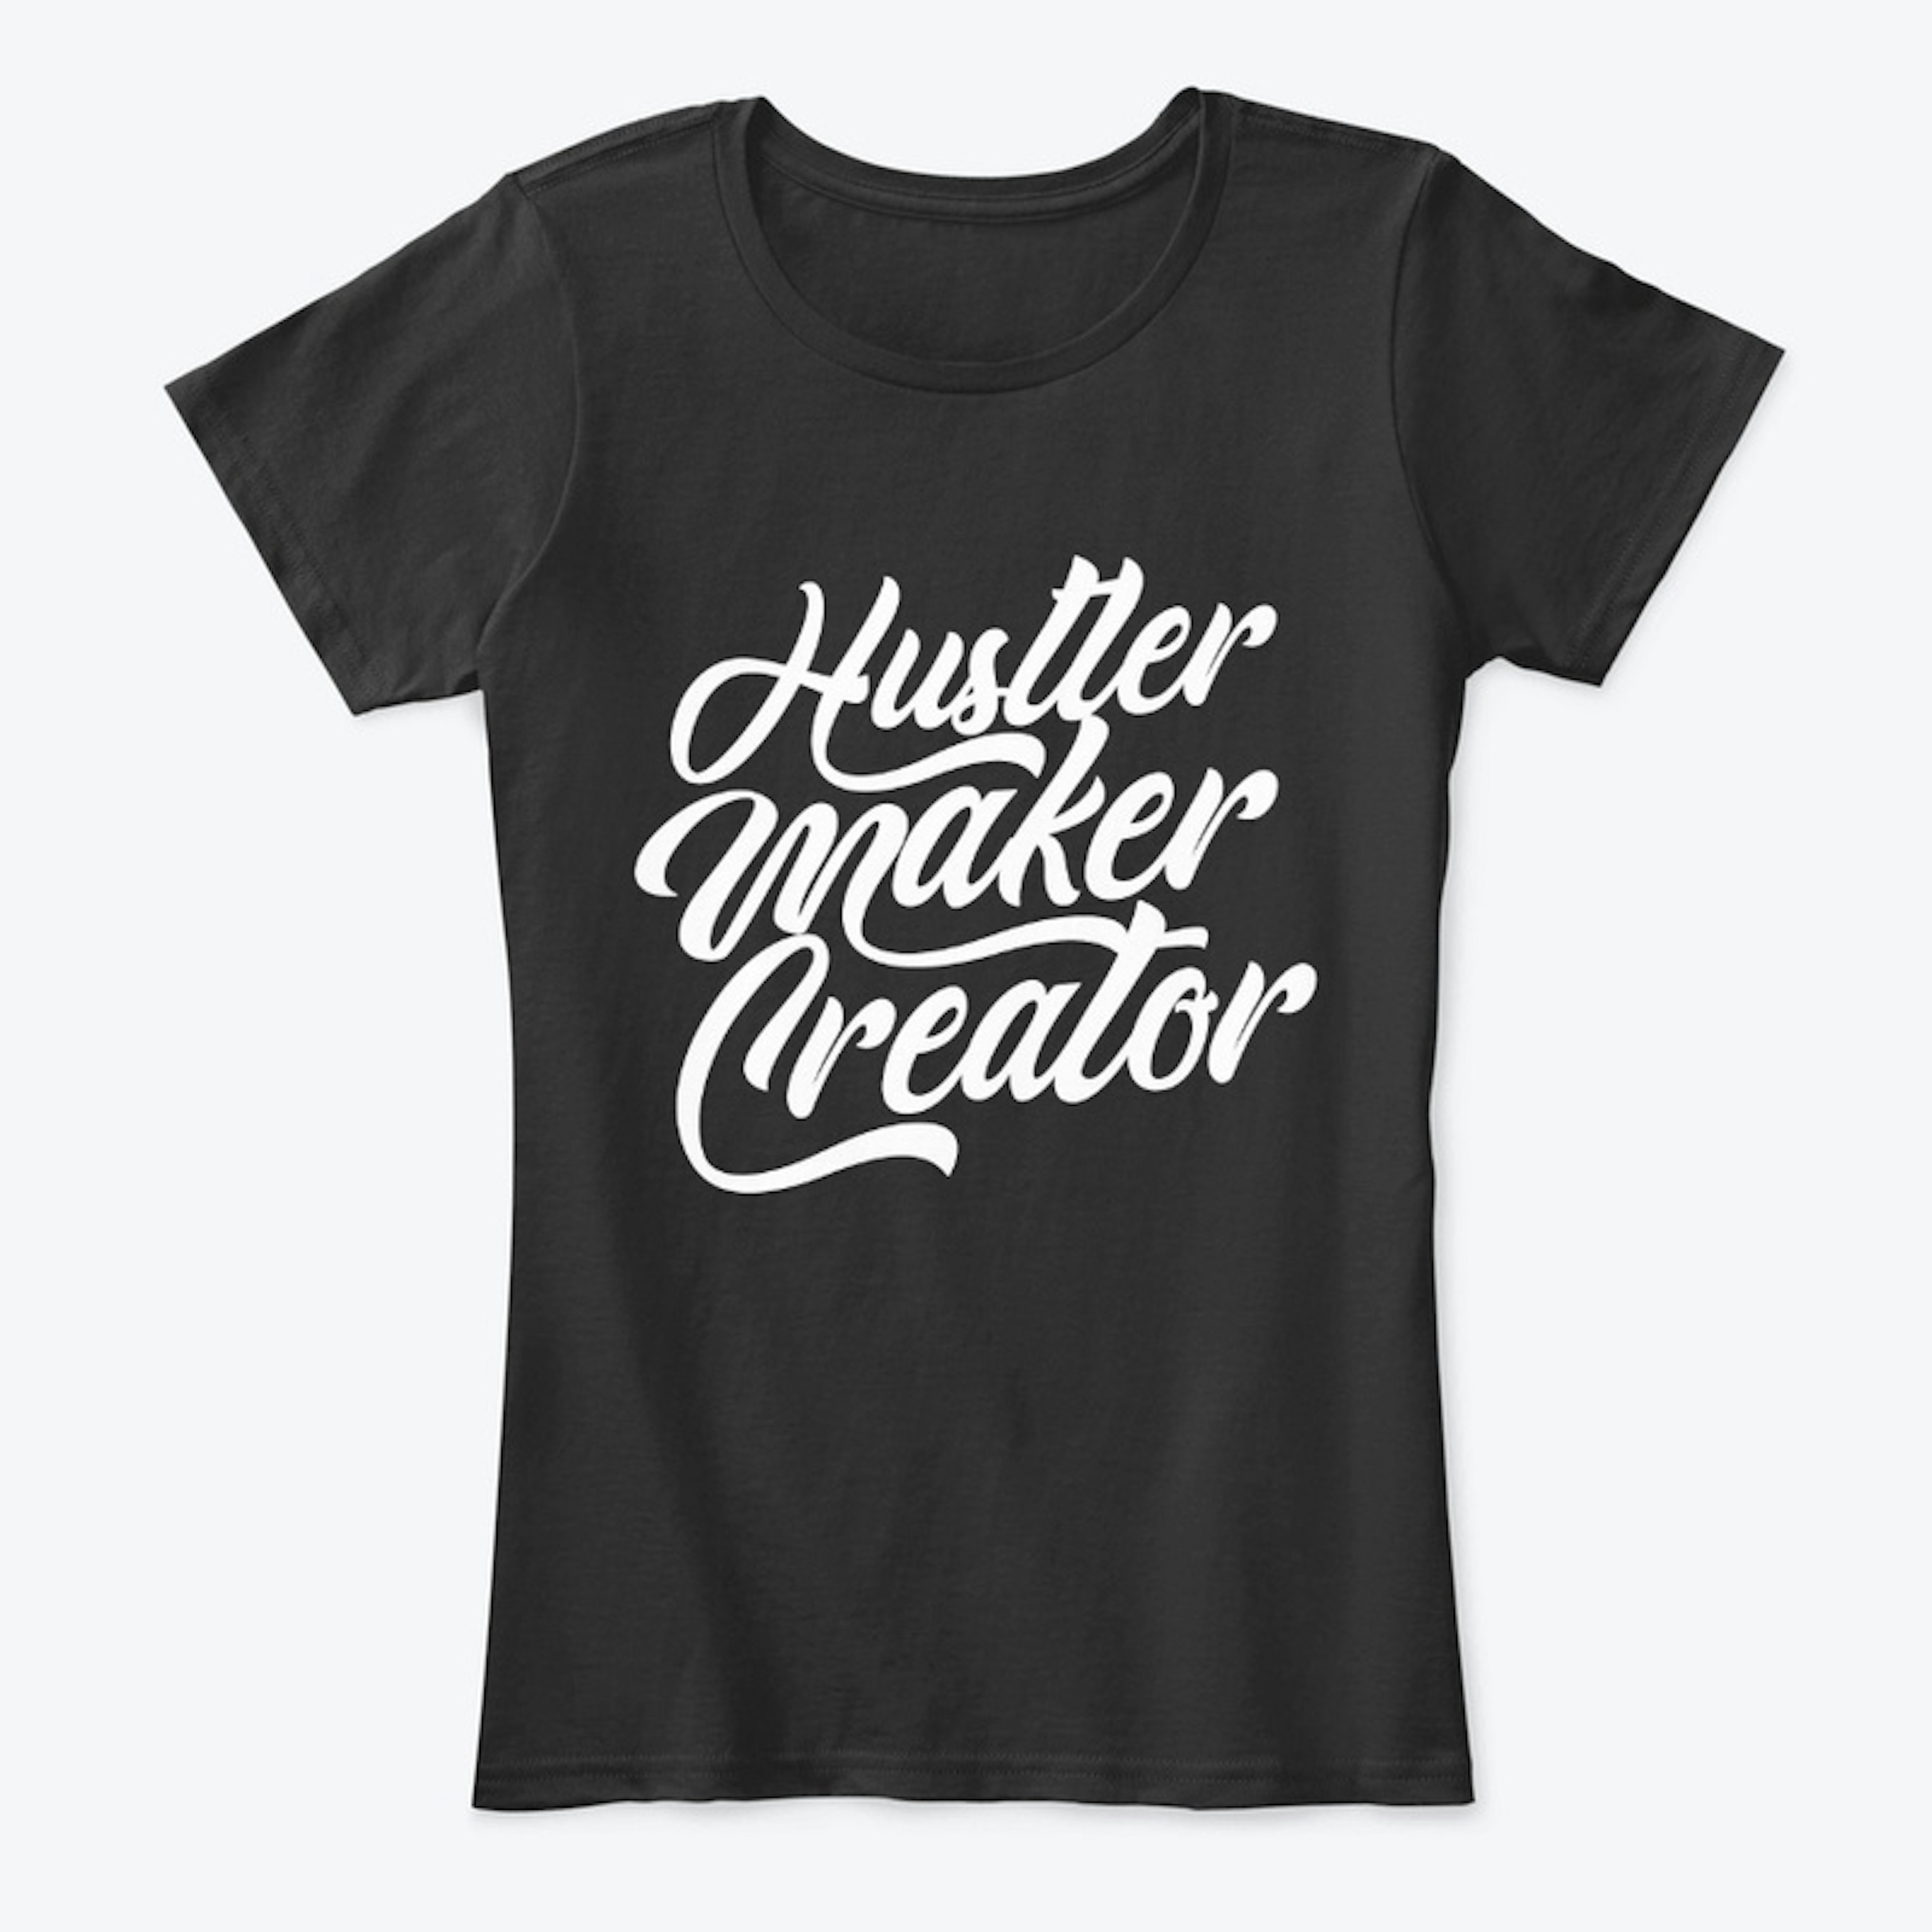 Hustler. Maker. Creator.